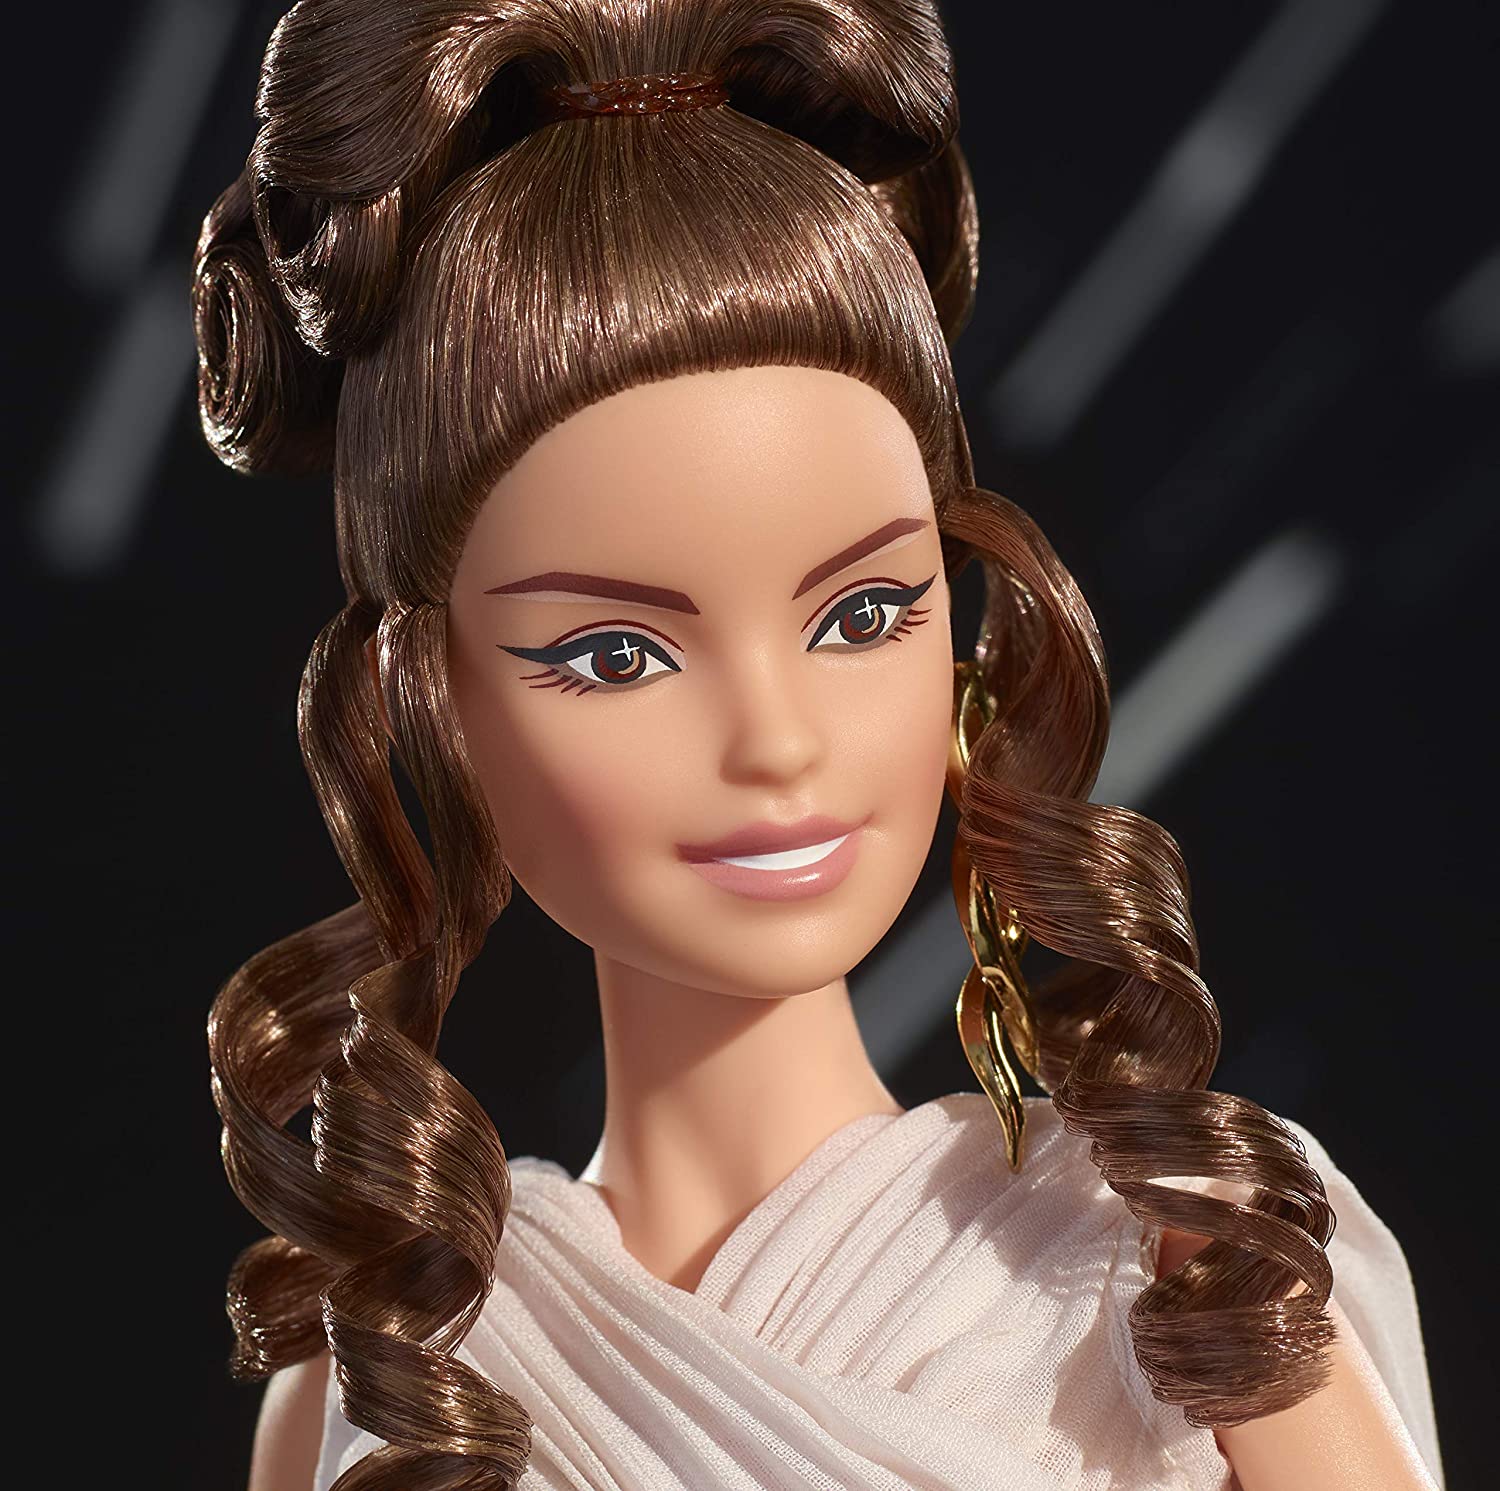 BARBIE Doll REY Star Wars 2020 NEU Limitiert Gold Label Model Muse GLY28 